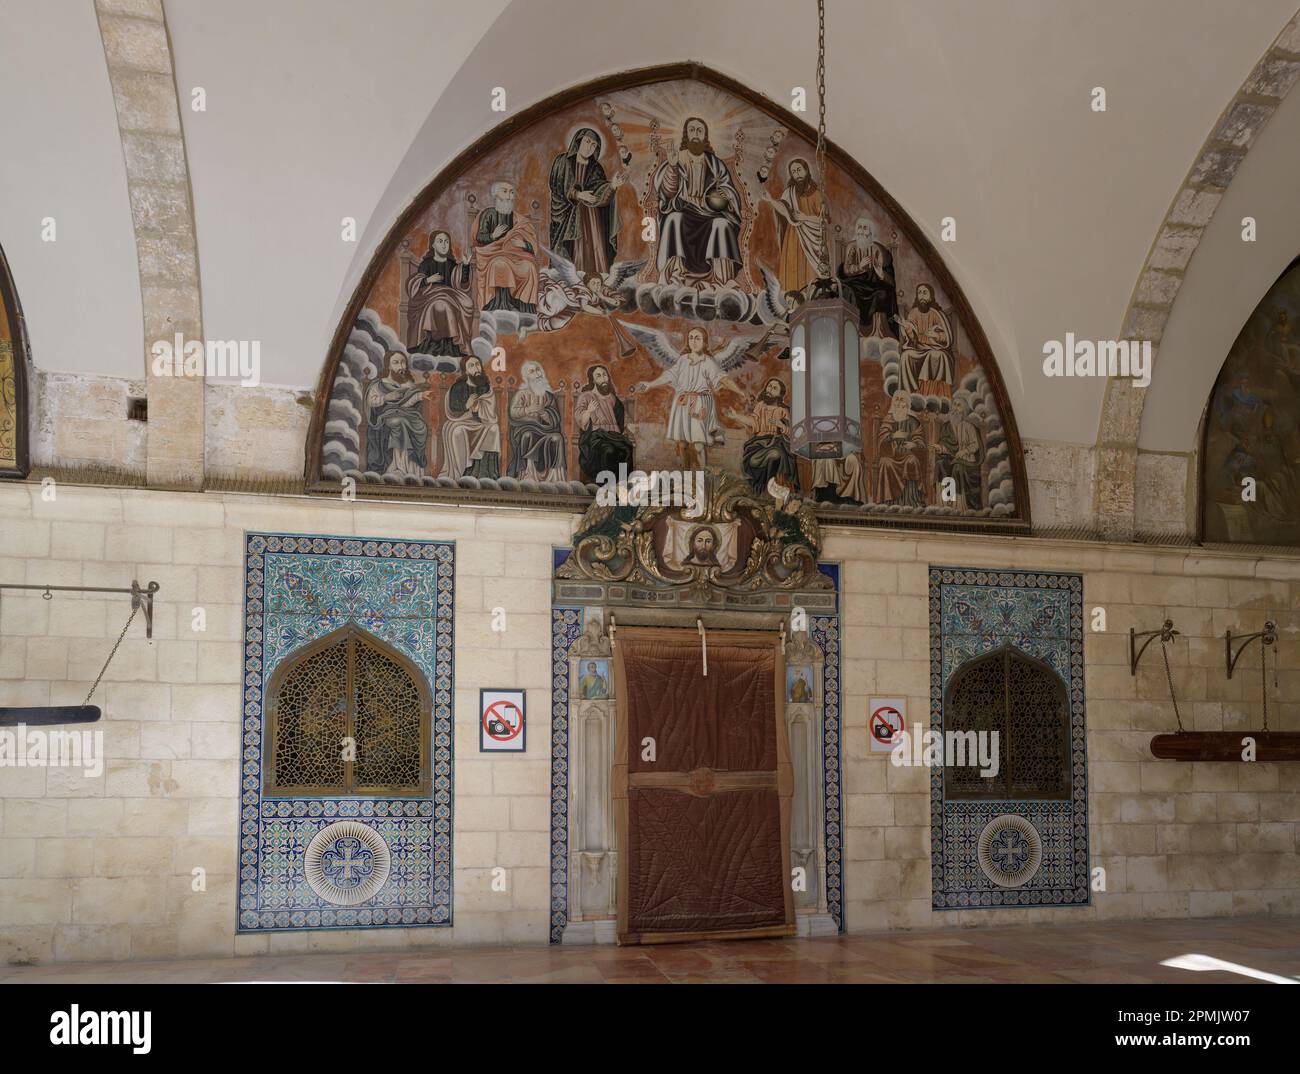 Saints Jacobs Cathedrali arménien dans le quartier arménien de Jérusalem, Israël Banque D'Images